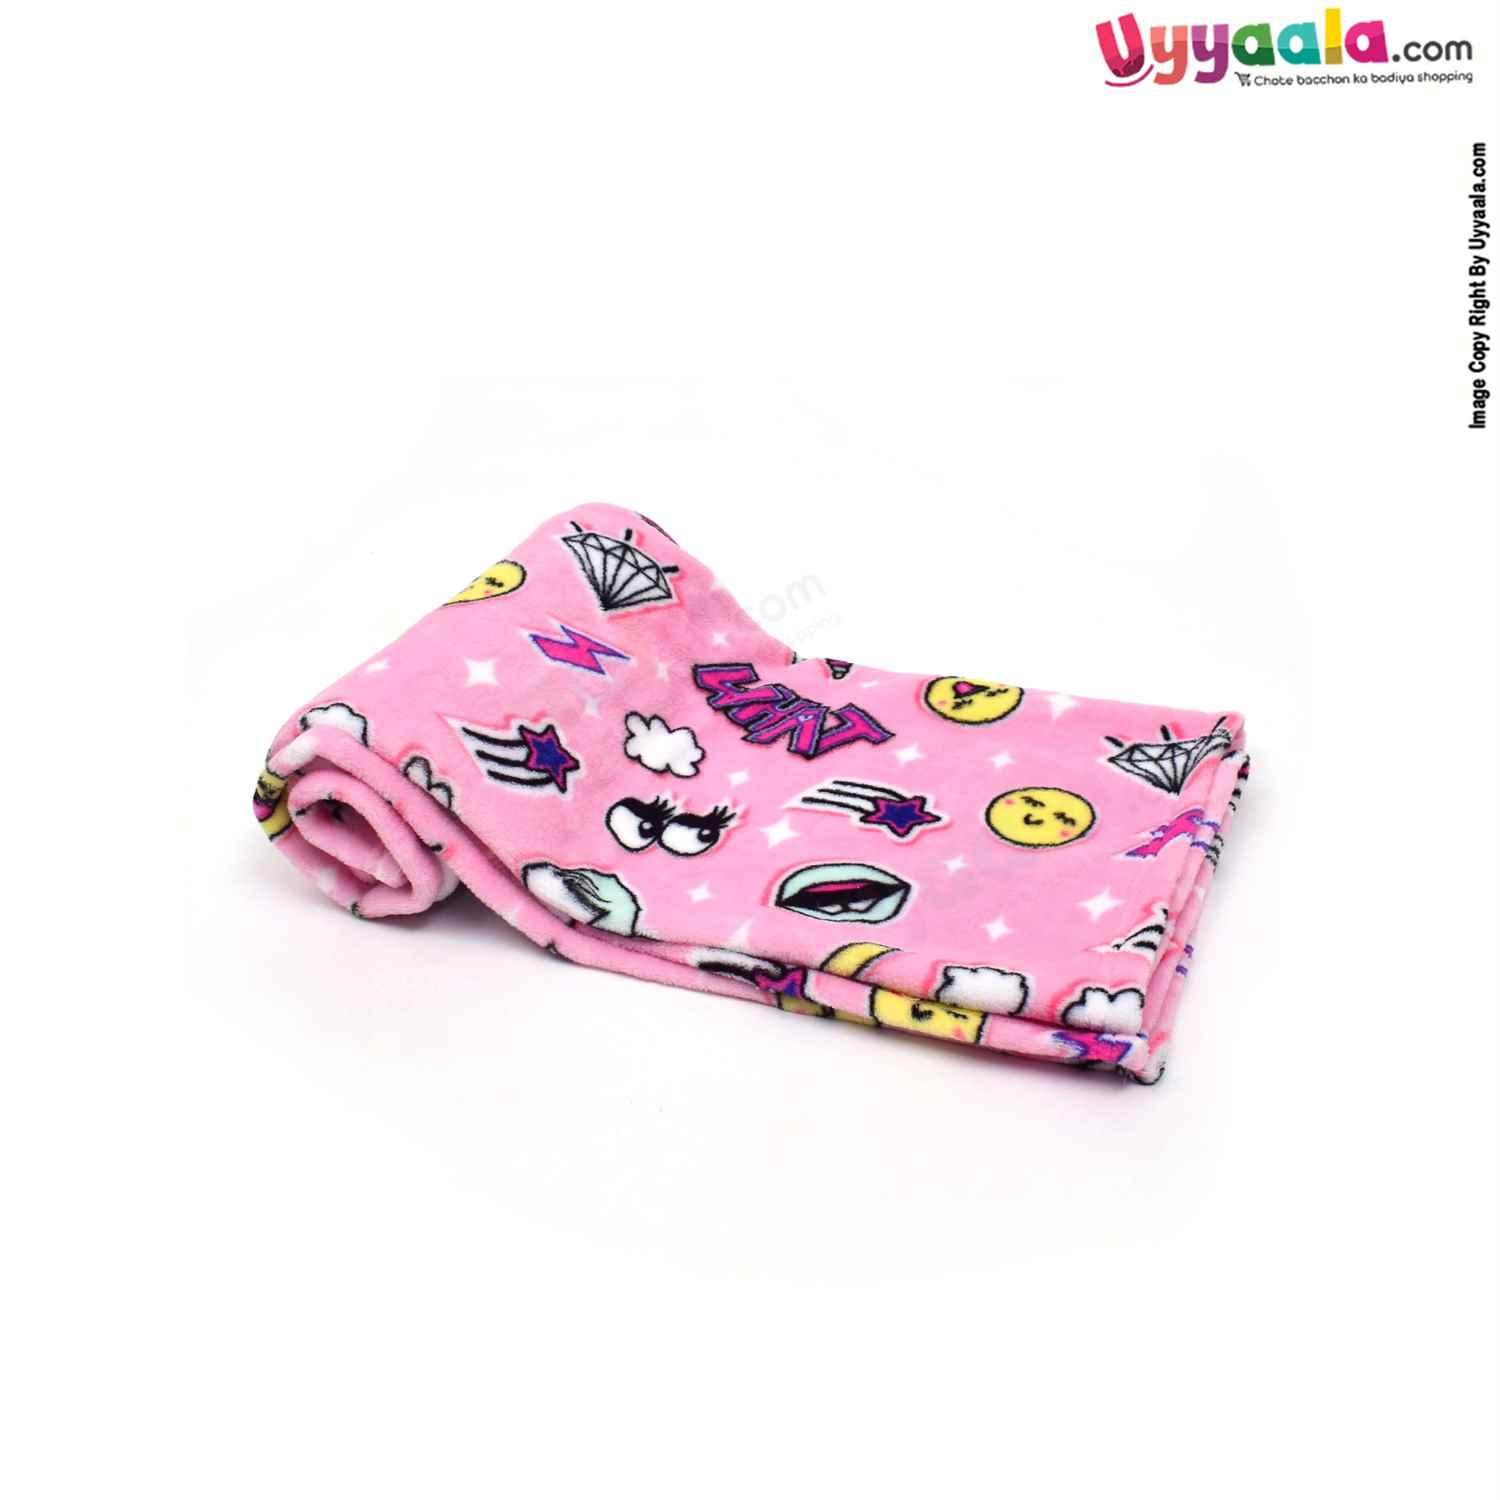 Baby Blanket Roll Velvet Fleece Material Emoji & Star Print along with Carry Bag